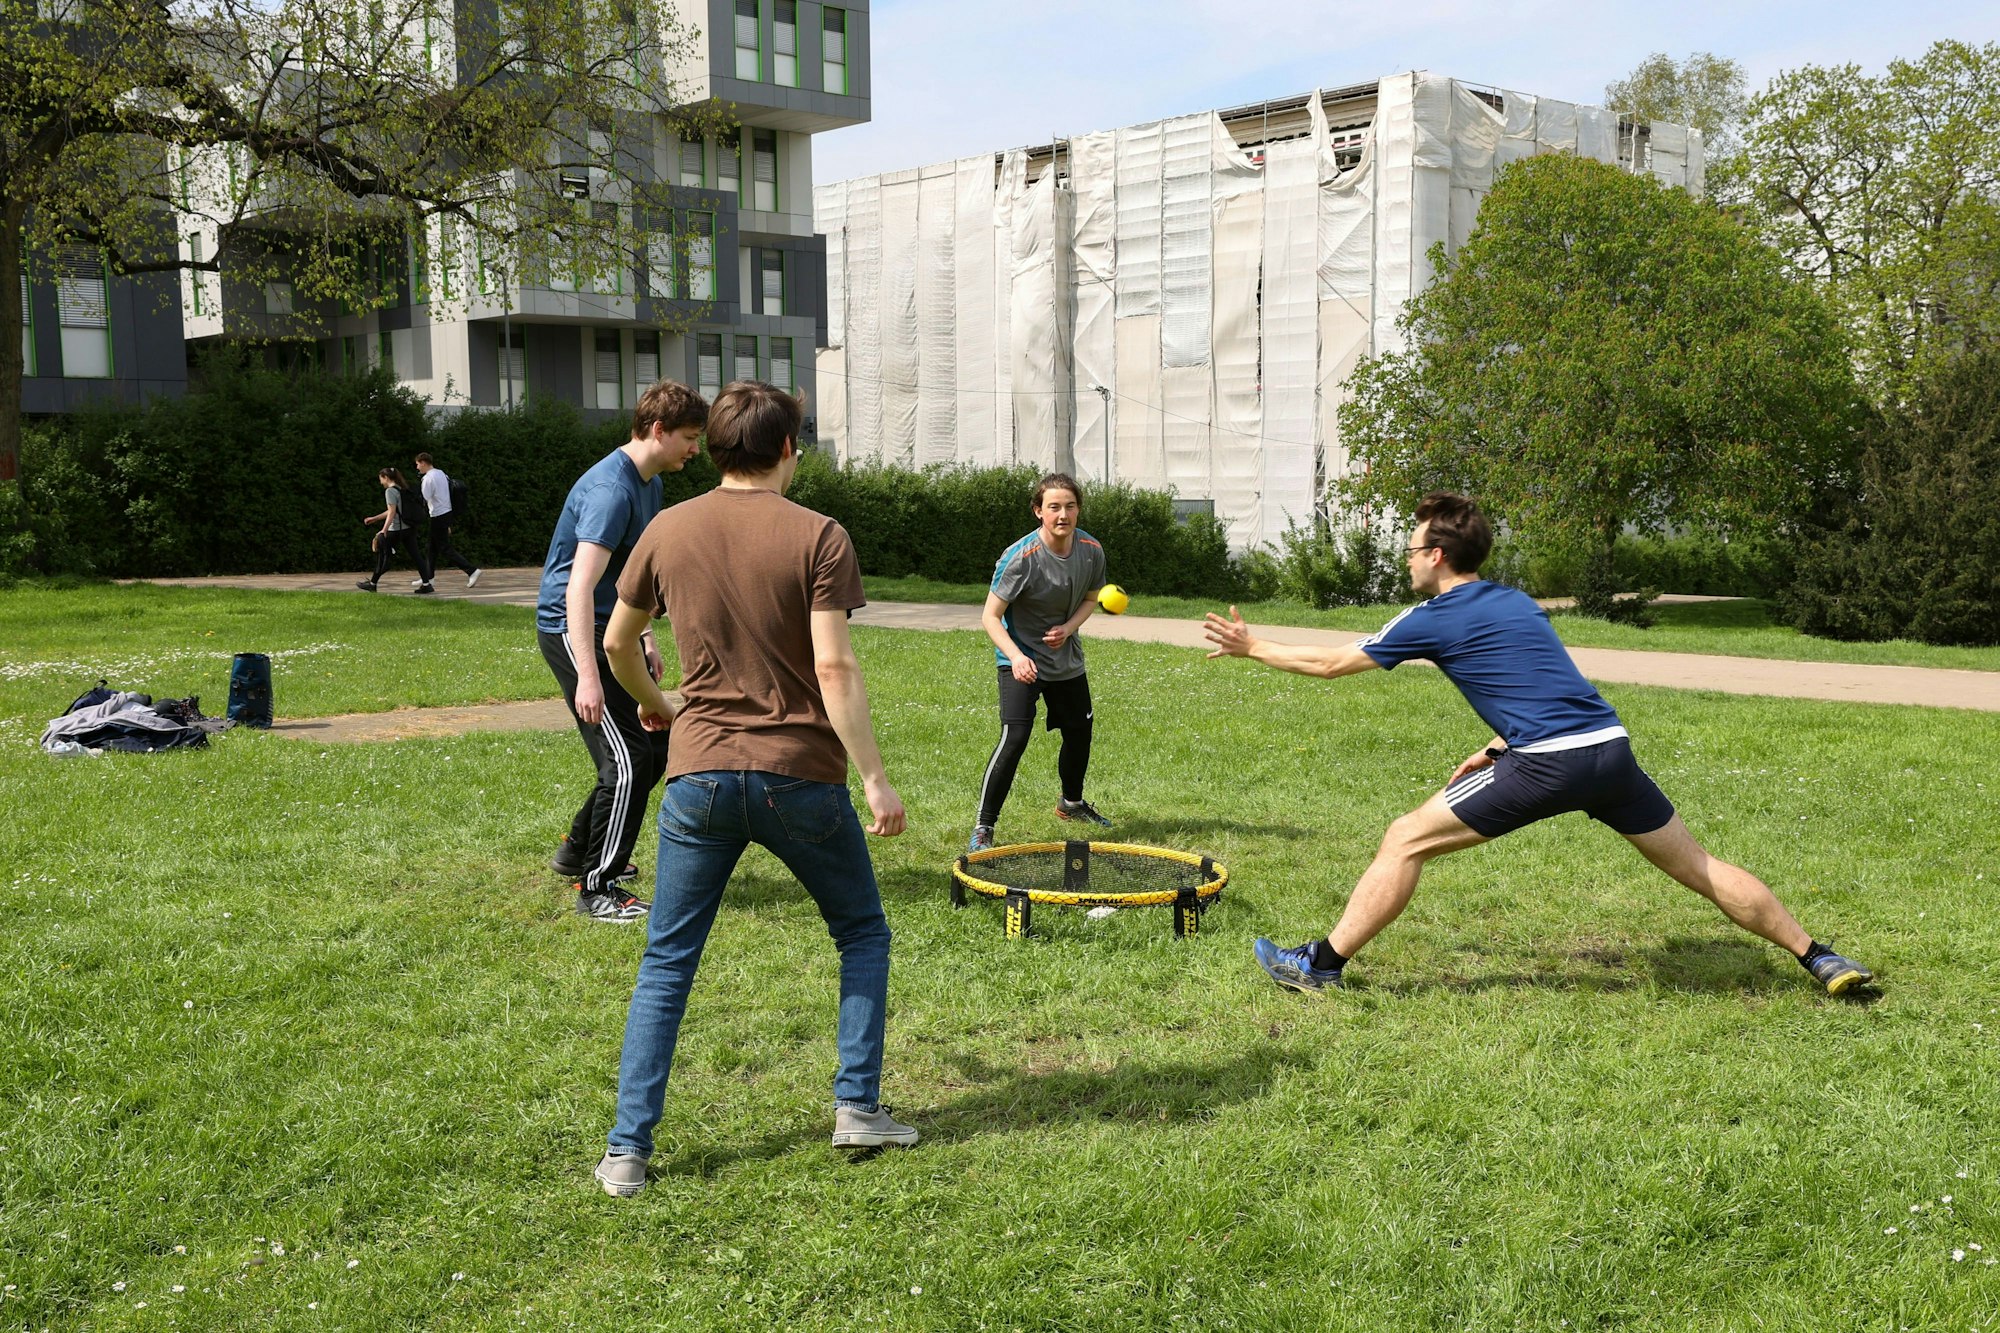 Sam, Niklas, Walter und Ellis spielen Spikeball auf einem grünen Rasen.